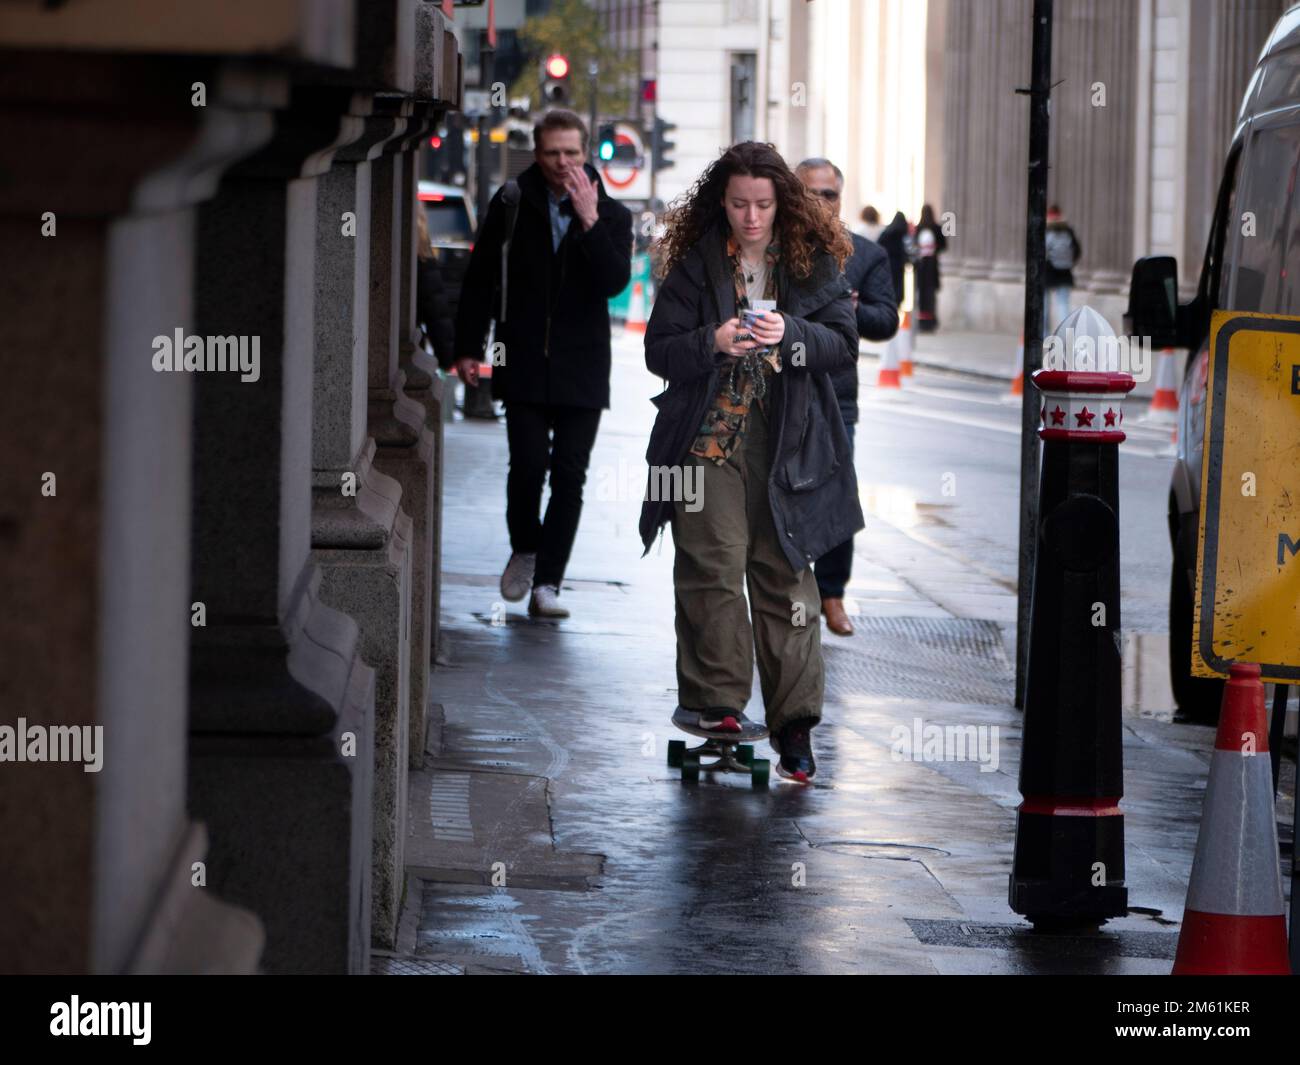 Femme skateboarder, patinage dans la rue Threadneedle regardant le téléphone Banque D'Images